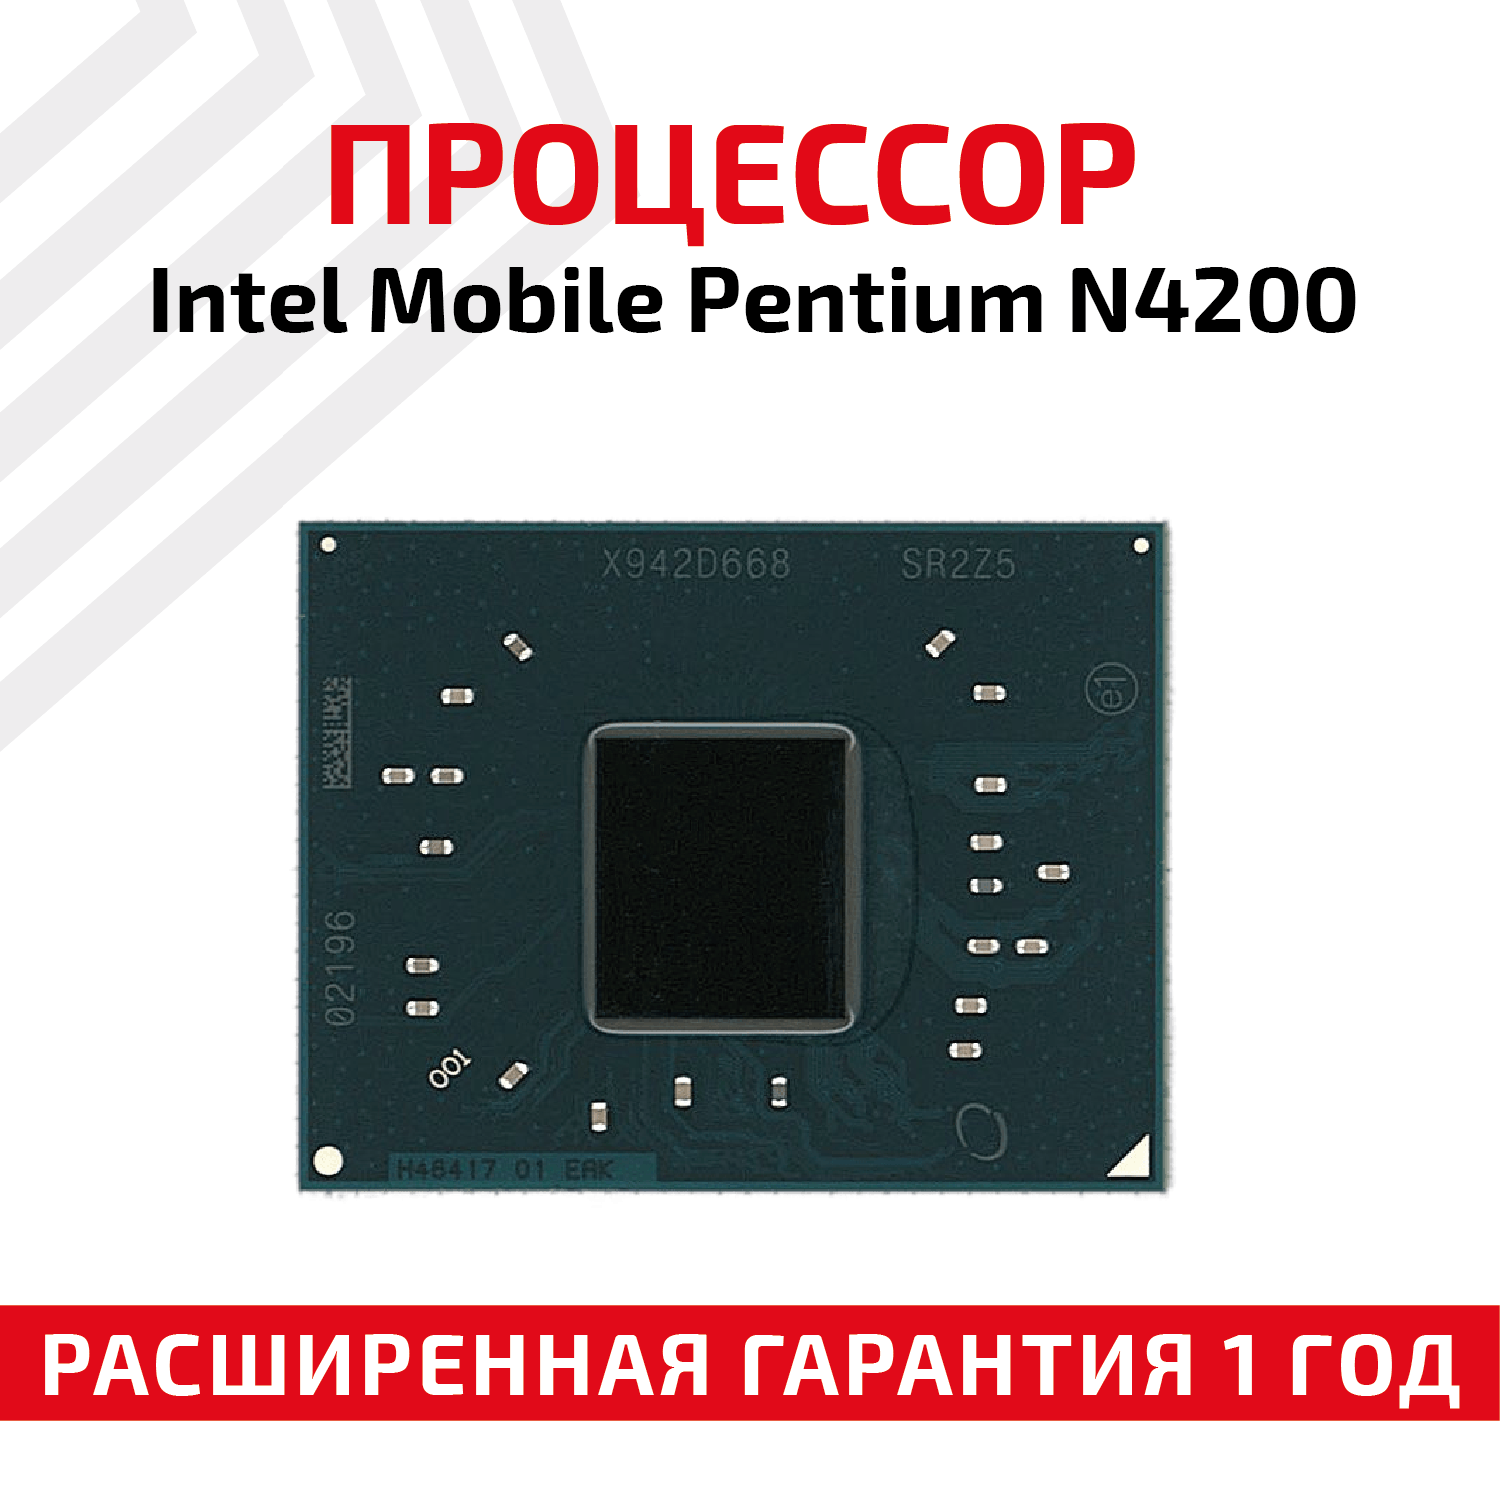 Процессор Intel Mobile Pentium N4200 SR2Z5 OEM